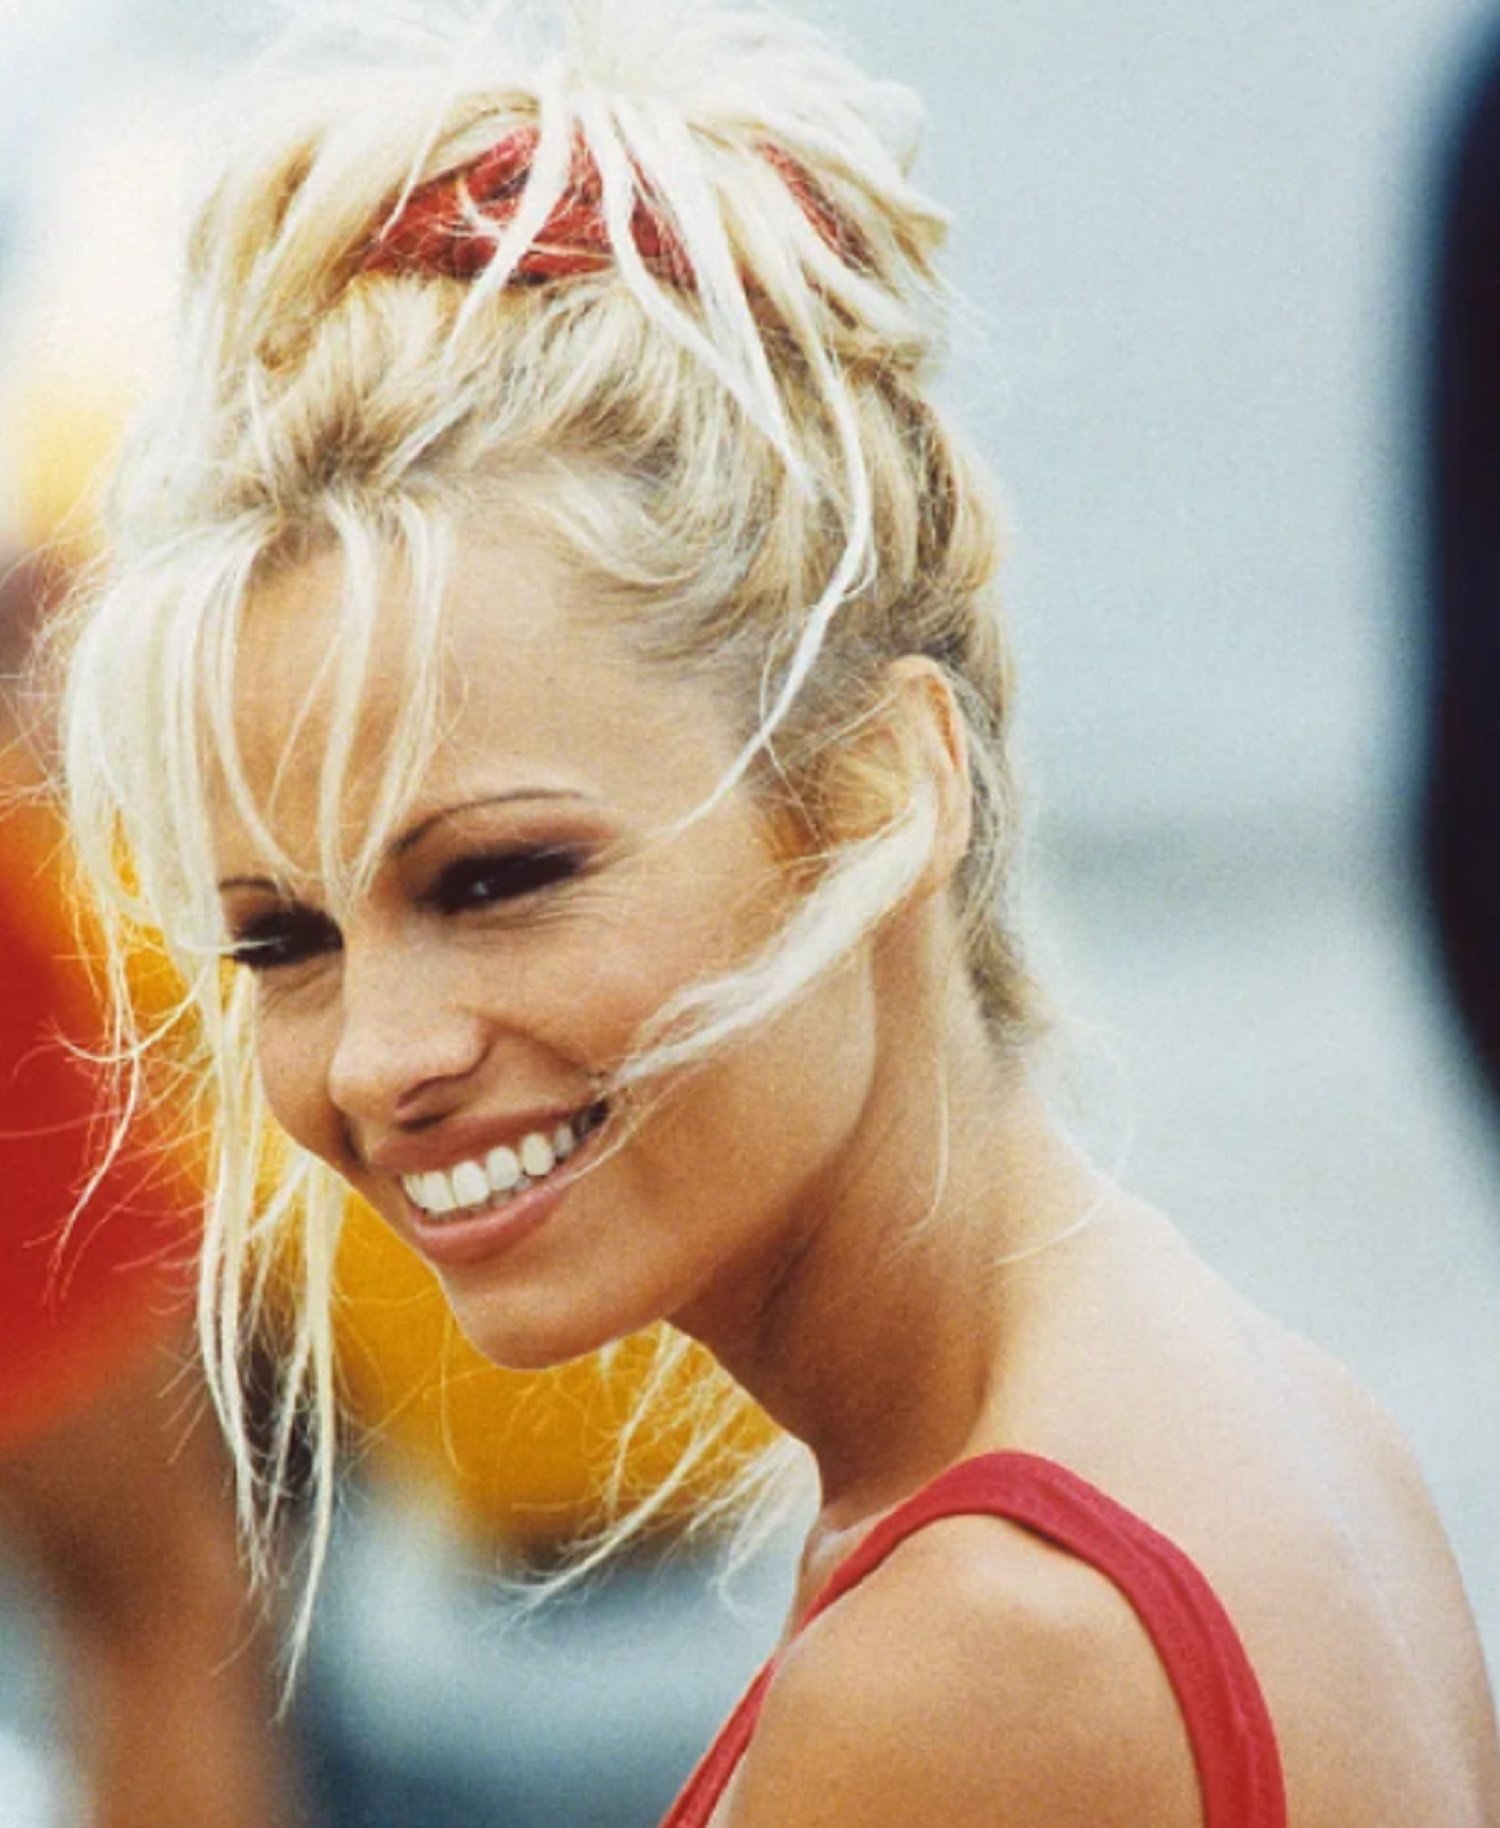 Pamela Anderson ya no es así, reaparece irreconocible, al natural: no parece ella